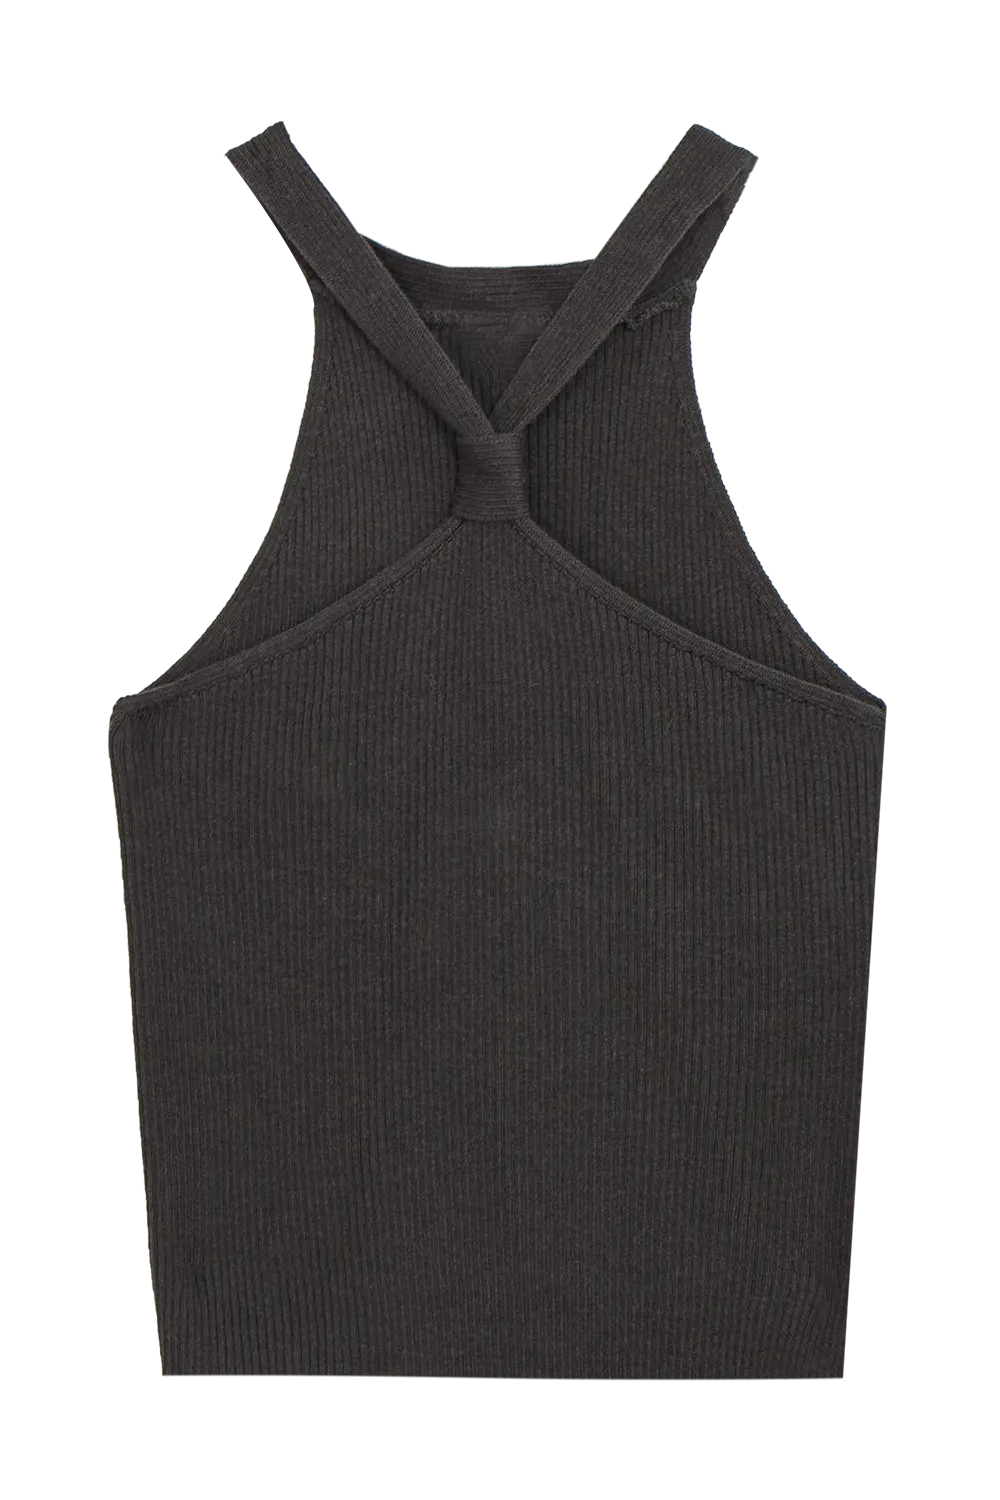 Áo vest dệt kim hiện đại với chi tiết đường viền cổ xoắn